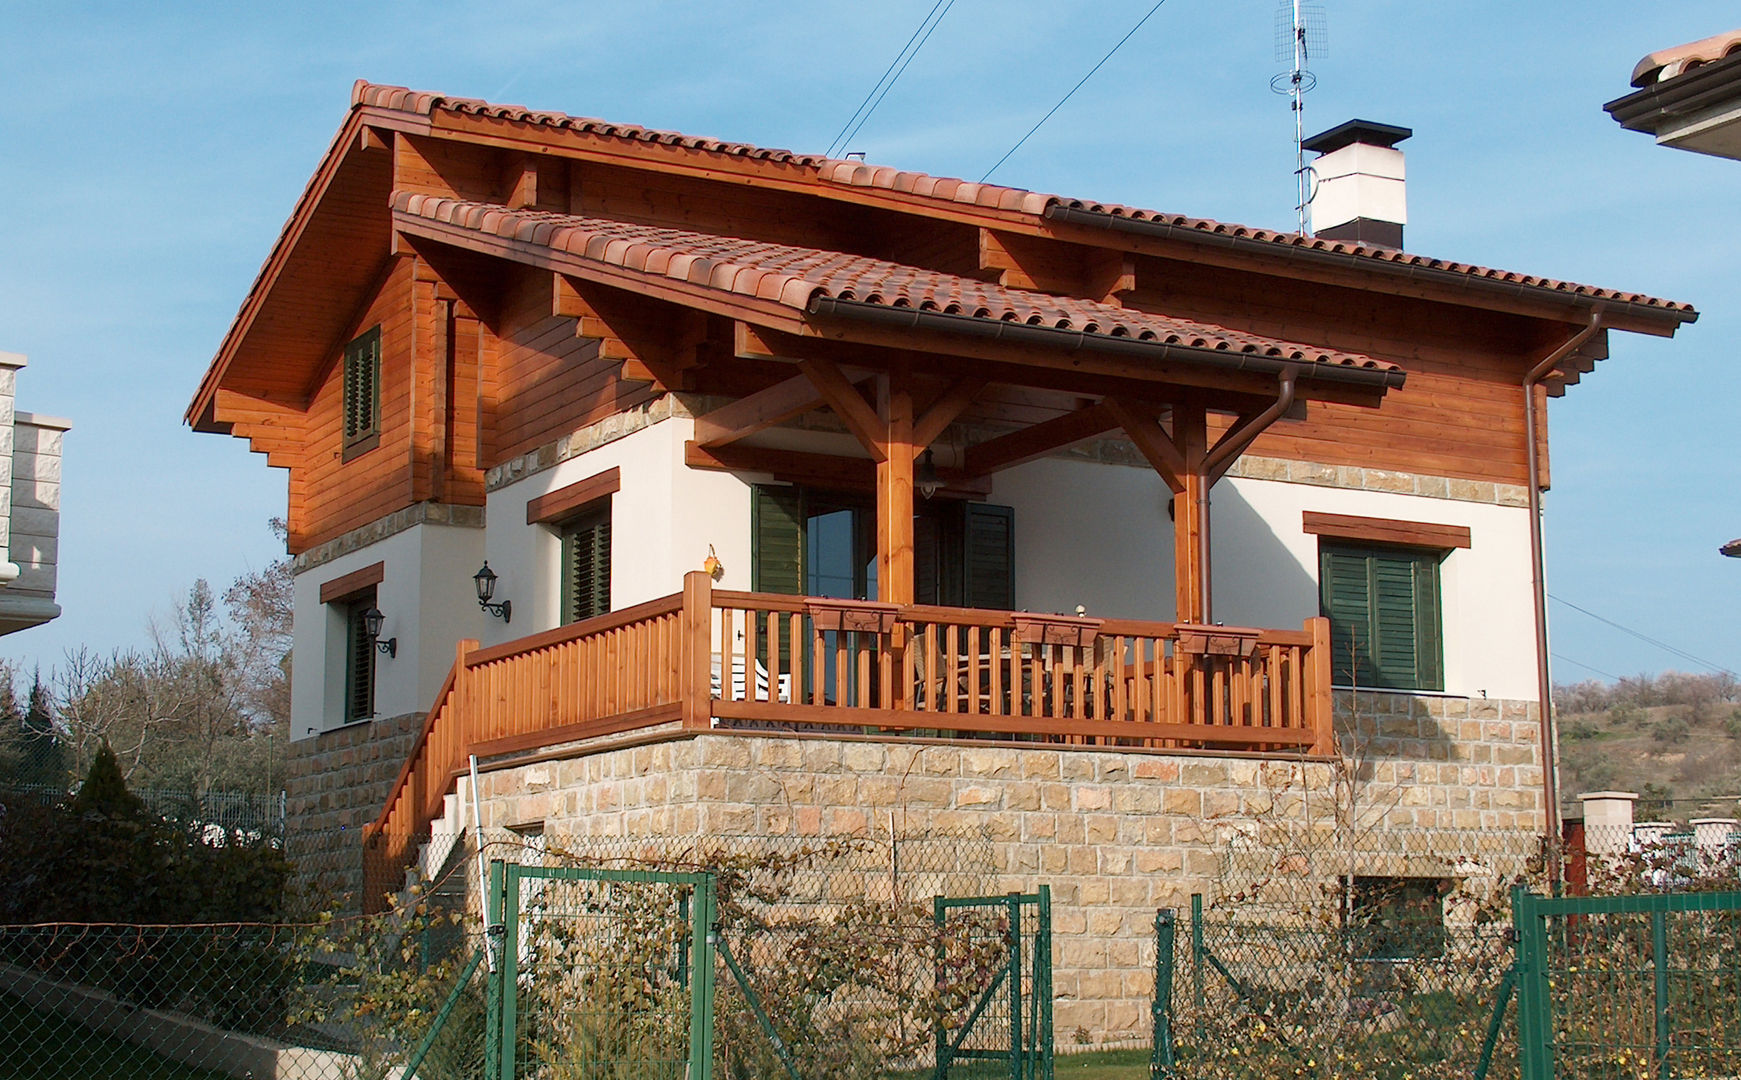 RUSTICASA | 100 projetos | Portugal + Espanha, RUSTICASA RUSTICASA Casas de madera Madera maciza Multicolor